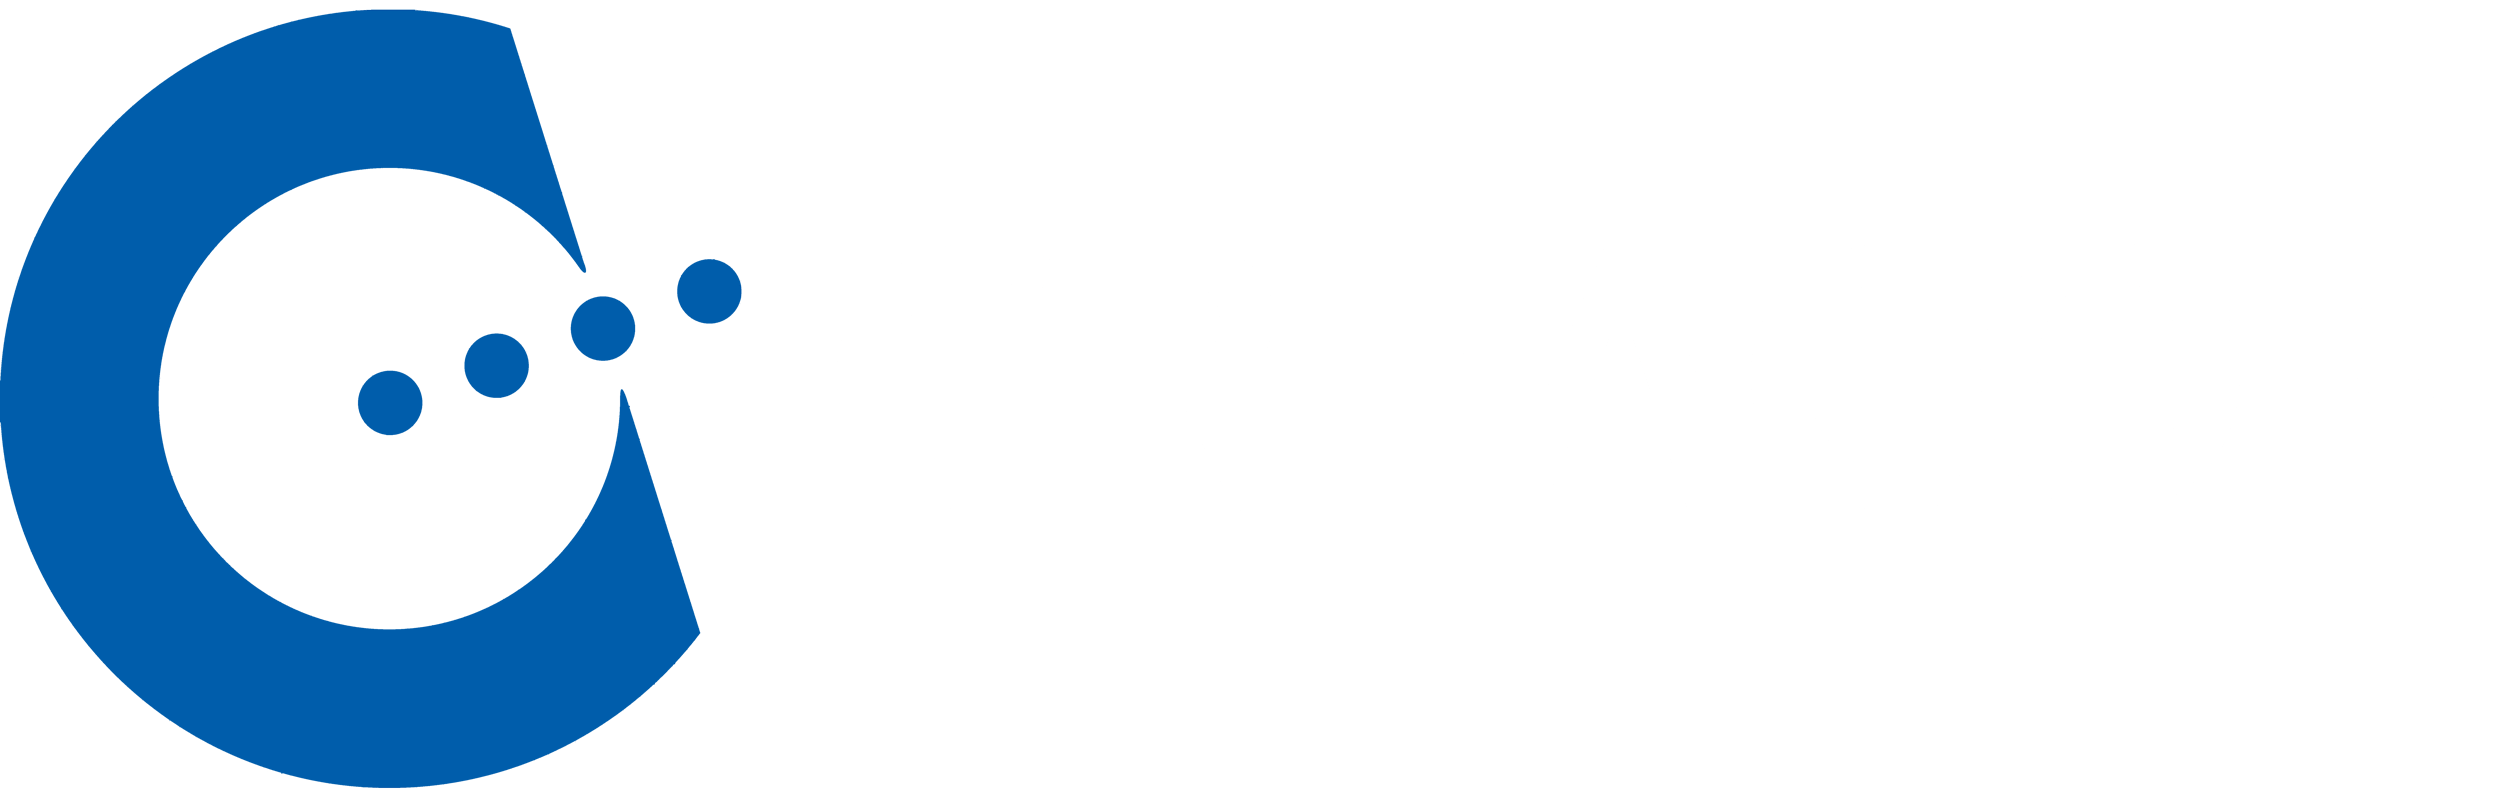 CREACON